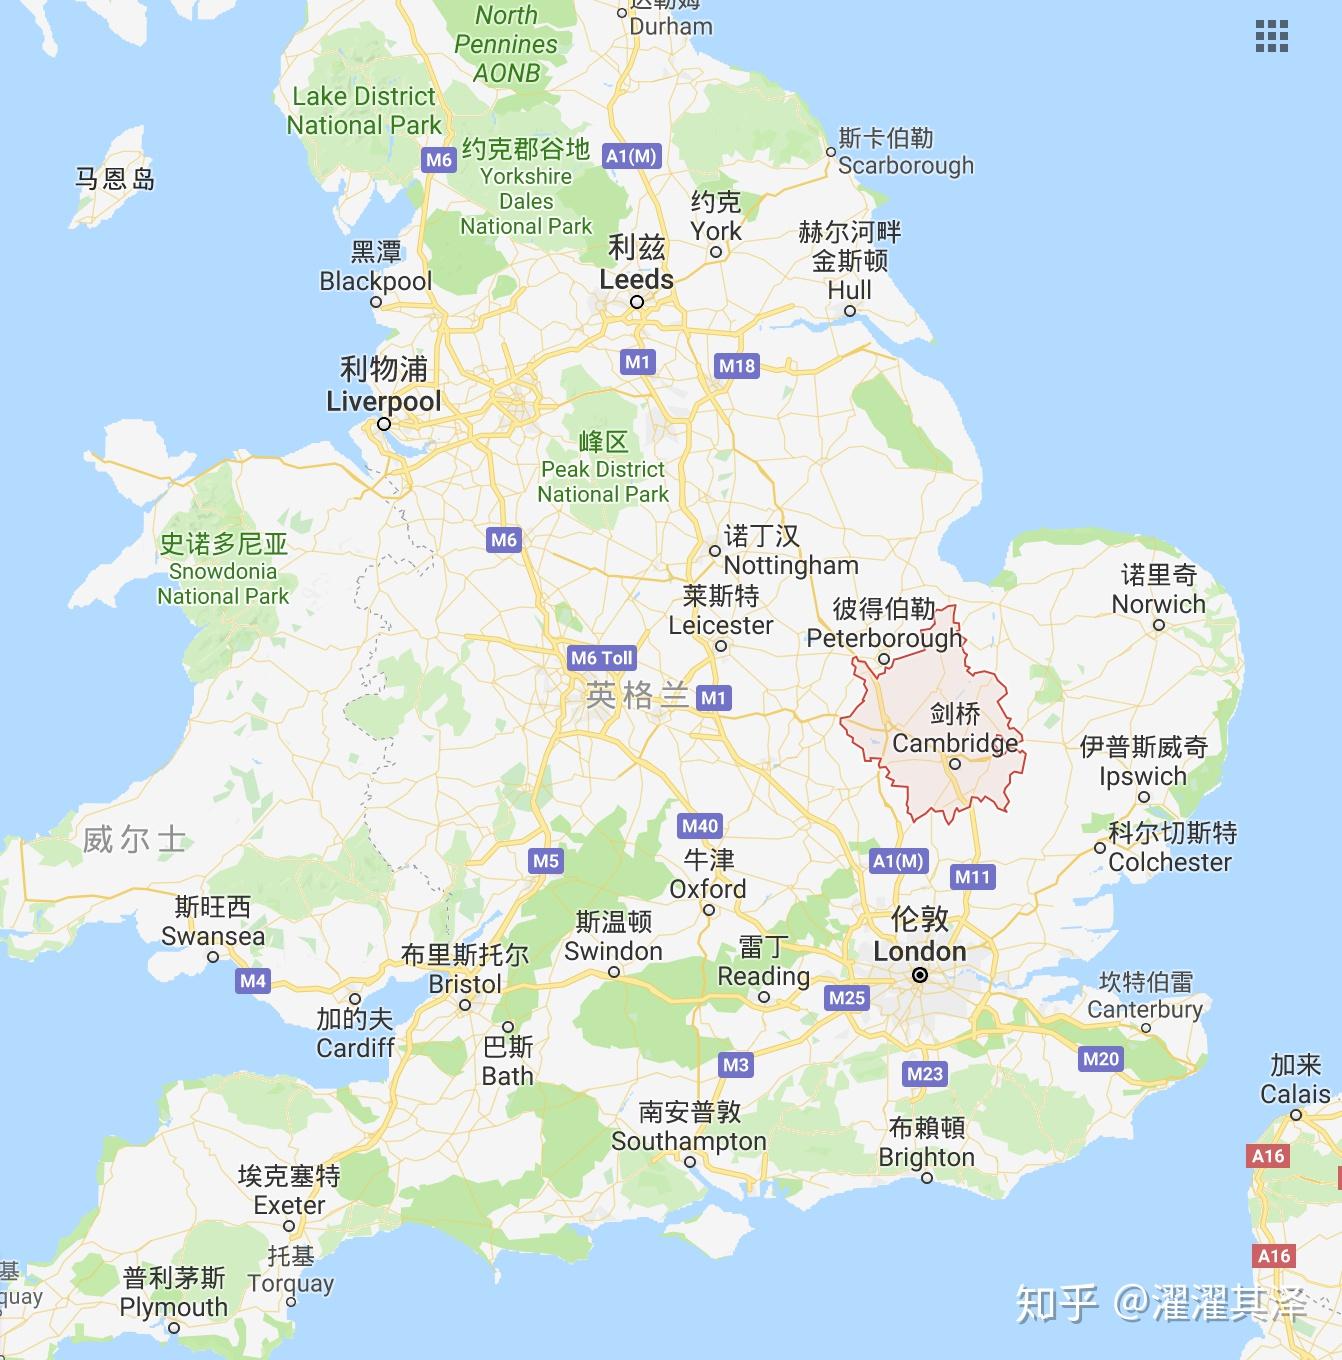 英国旅游景点分布地图_英国地图库_地图窝